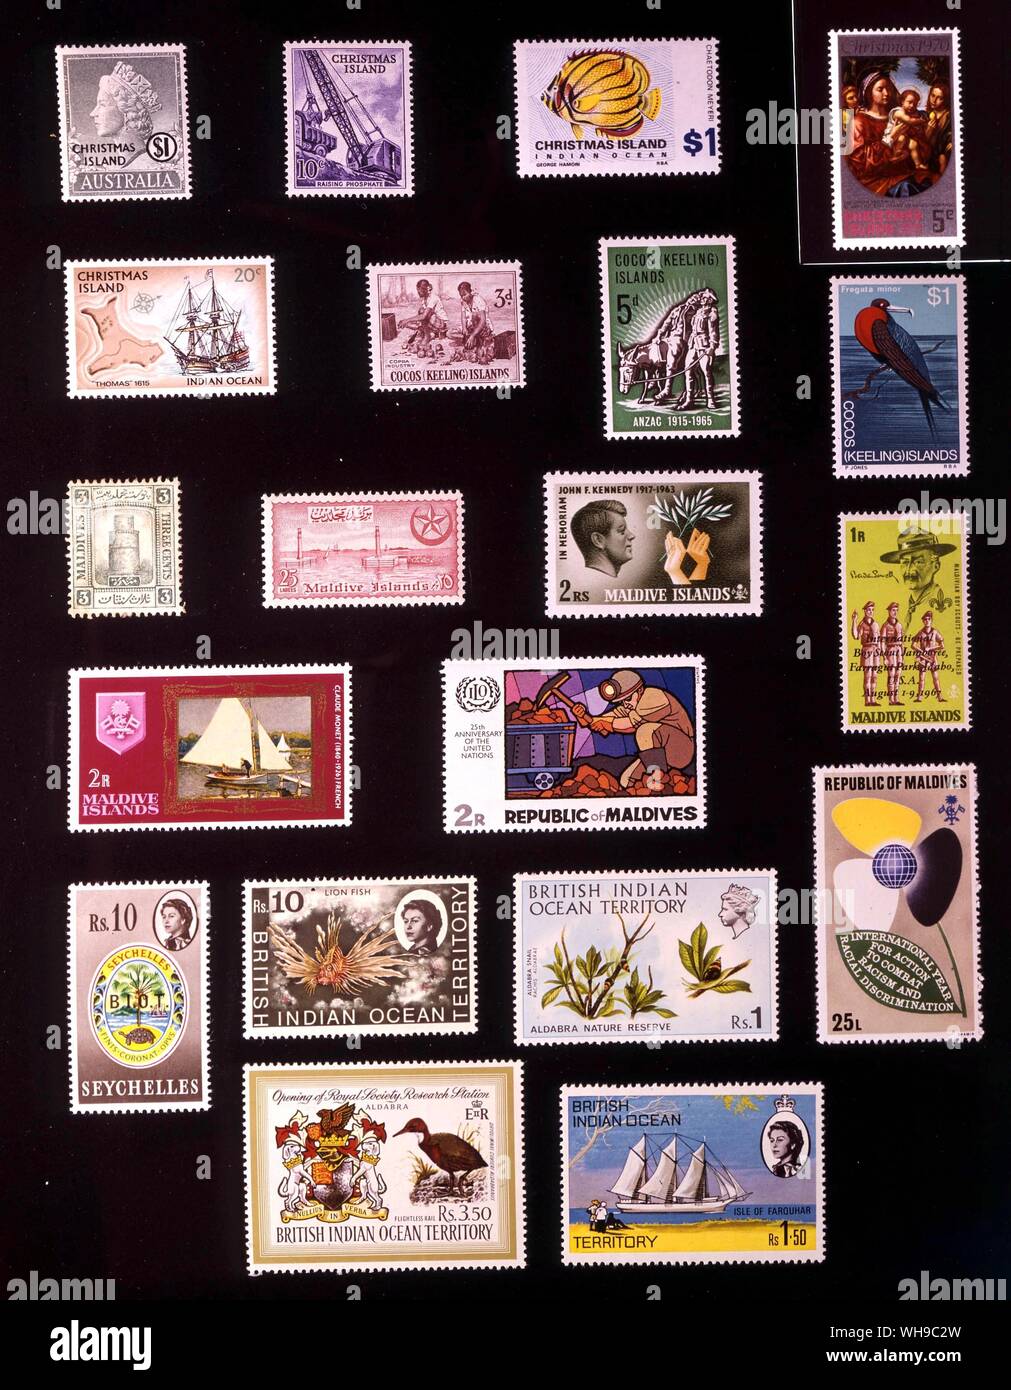 ASIA - Oceano indiano Isole: (da sinistra a destra) 1. Isola di Natale, 1 dollaro, 1958, 2. Isola di Natale, 10 centesimi, 1963, 3. Isola di Natale, 1 dollaro, 1968, 4. Isola di Natale, 5 centesimi, 1970, 5. Isola di Natale, 20 centesimi, 6. Isole Cocos, 3 pence, 1963, 7. Isole Cocos, 5 pence, 1965, 8. Isole Cocos, 1 dollaro, 1979, 9. Le Maldive, 3 centesimi, 1909, 10. Le Maldive, 25 larees, 1956, 11. Le Maldive, 2 rupie, 1965, 12. Le Maldive, 1 rupee, 1968, 13. Le Maldive, 2 rupie, 1968, 14. Le Maldive, 2 rupie, 1970, 15. Le Maldive, 25 larees, 1971, 16. Indiano Britannico Foto Stock